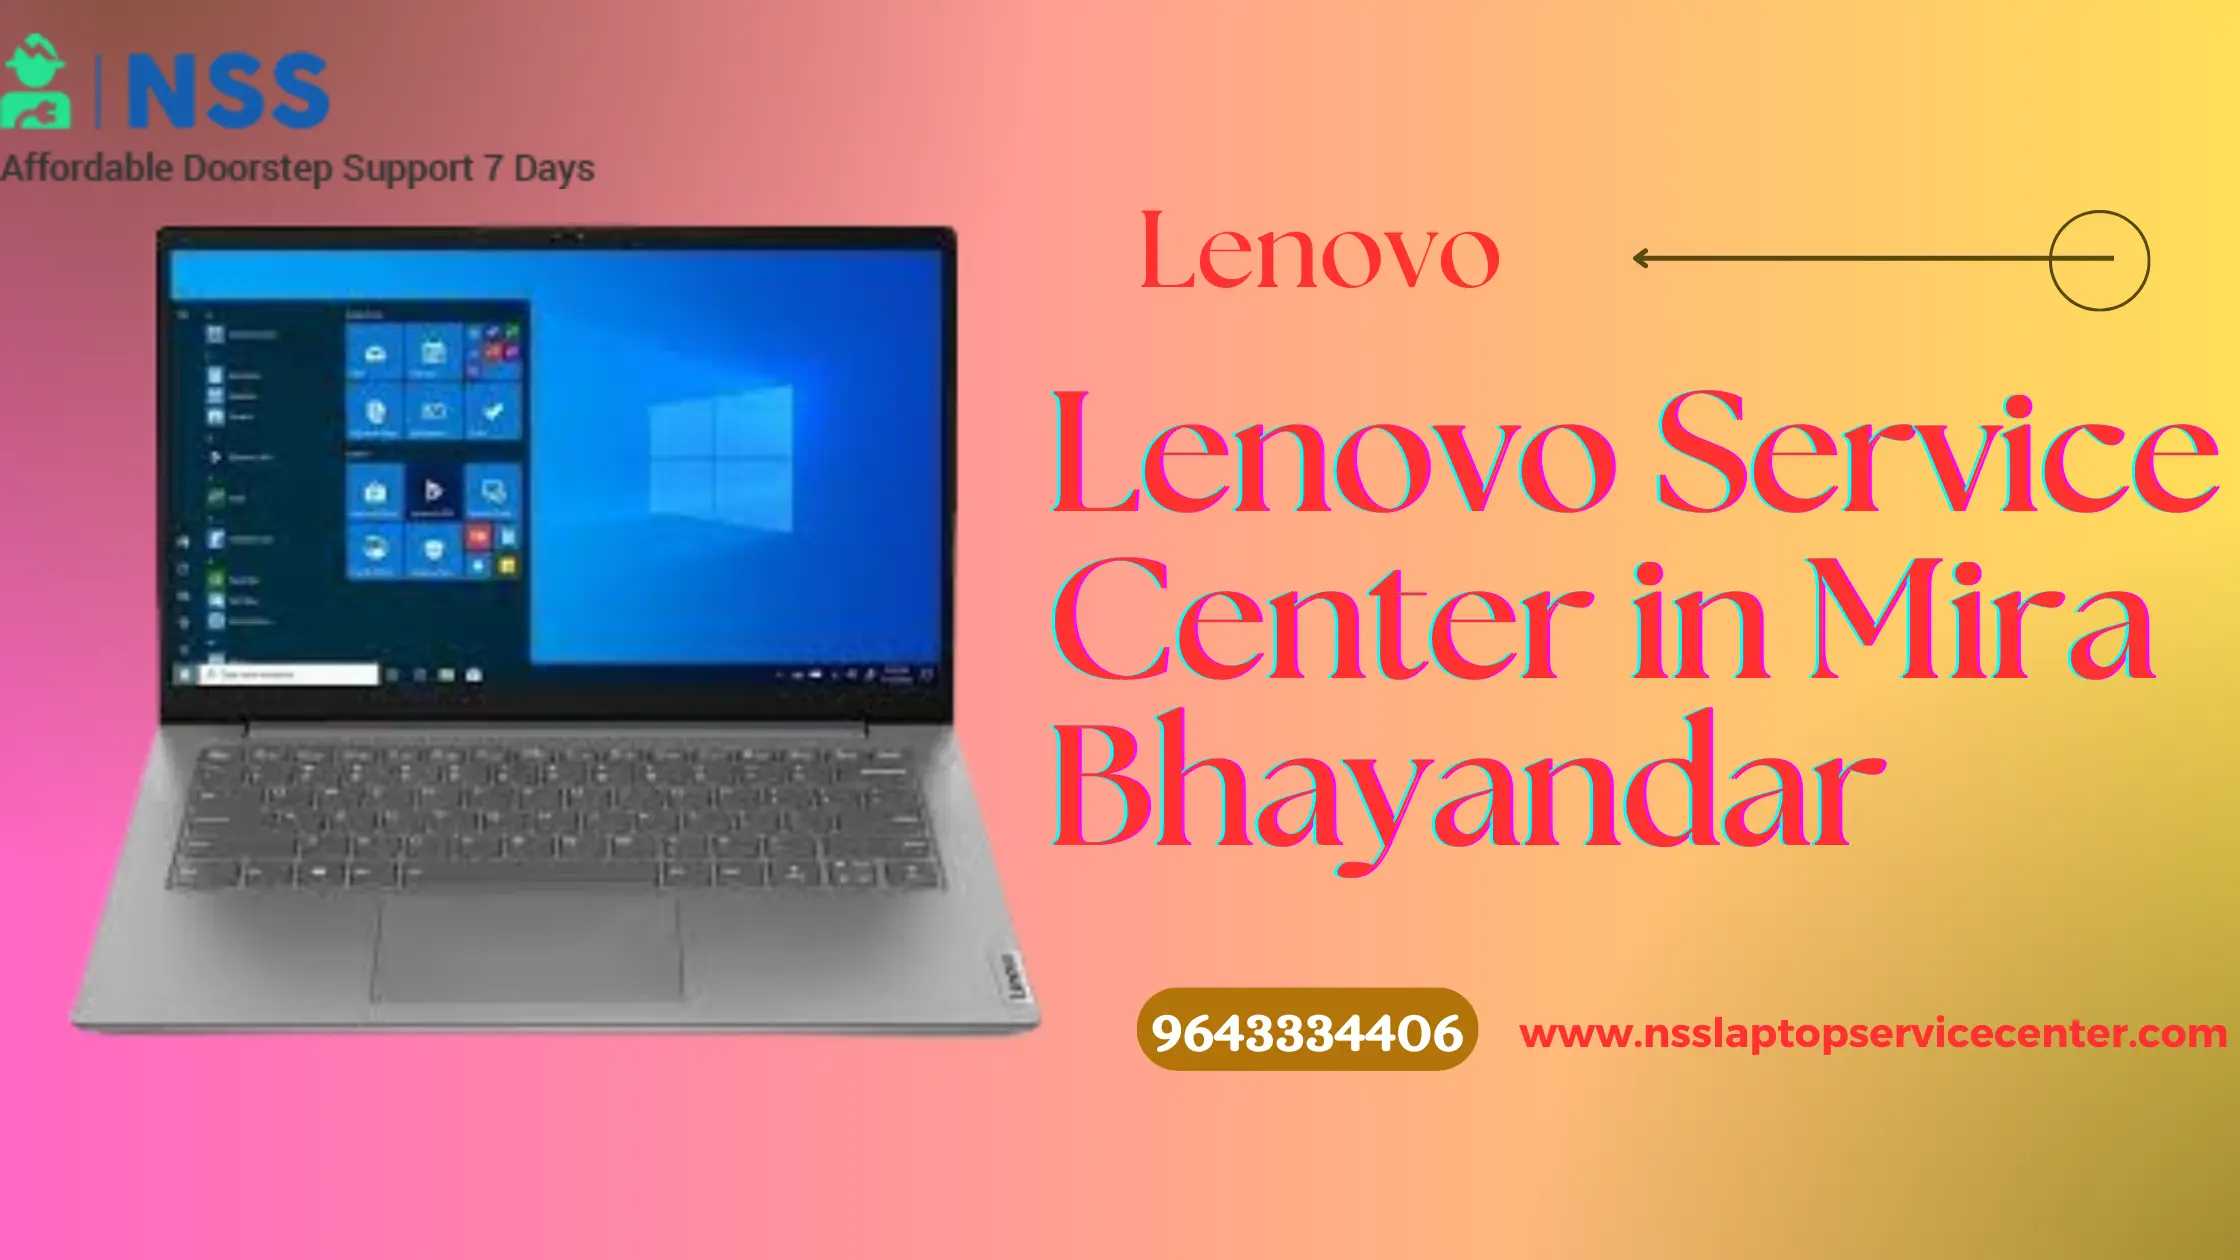 Lenovo Service Center in Mira Bhayandar Near Mumbai